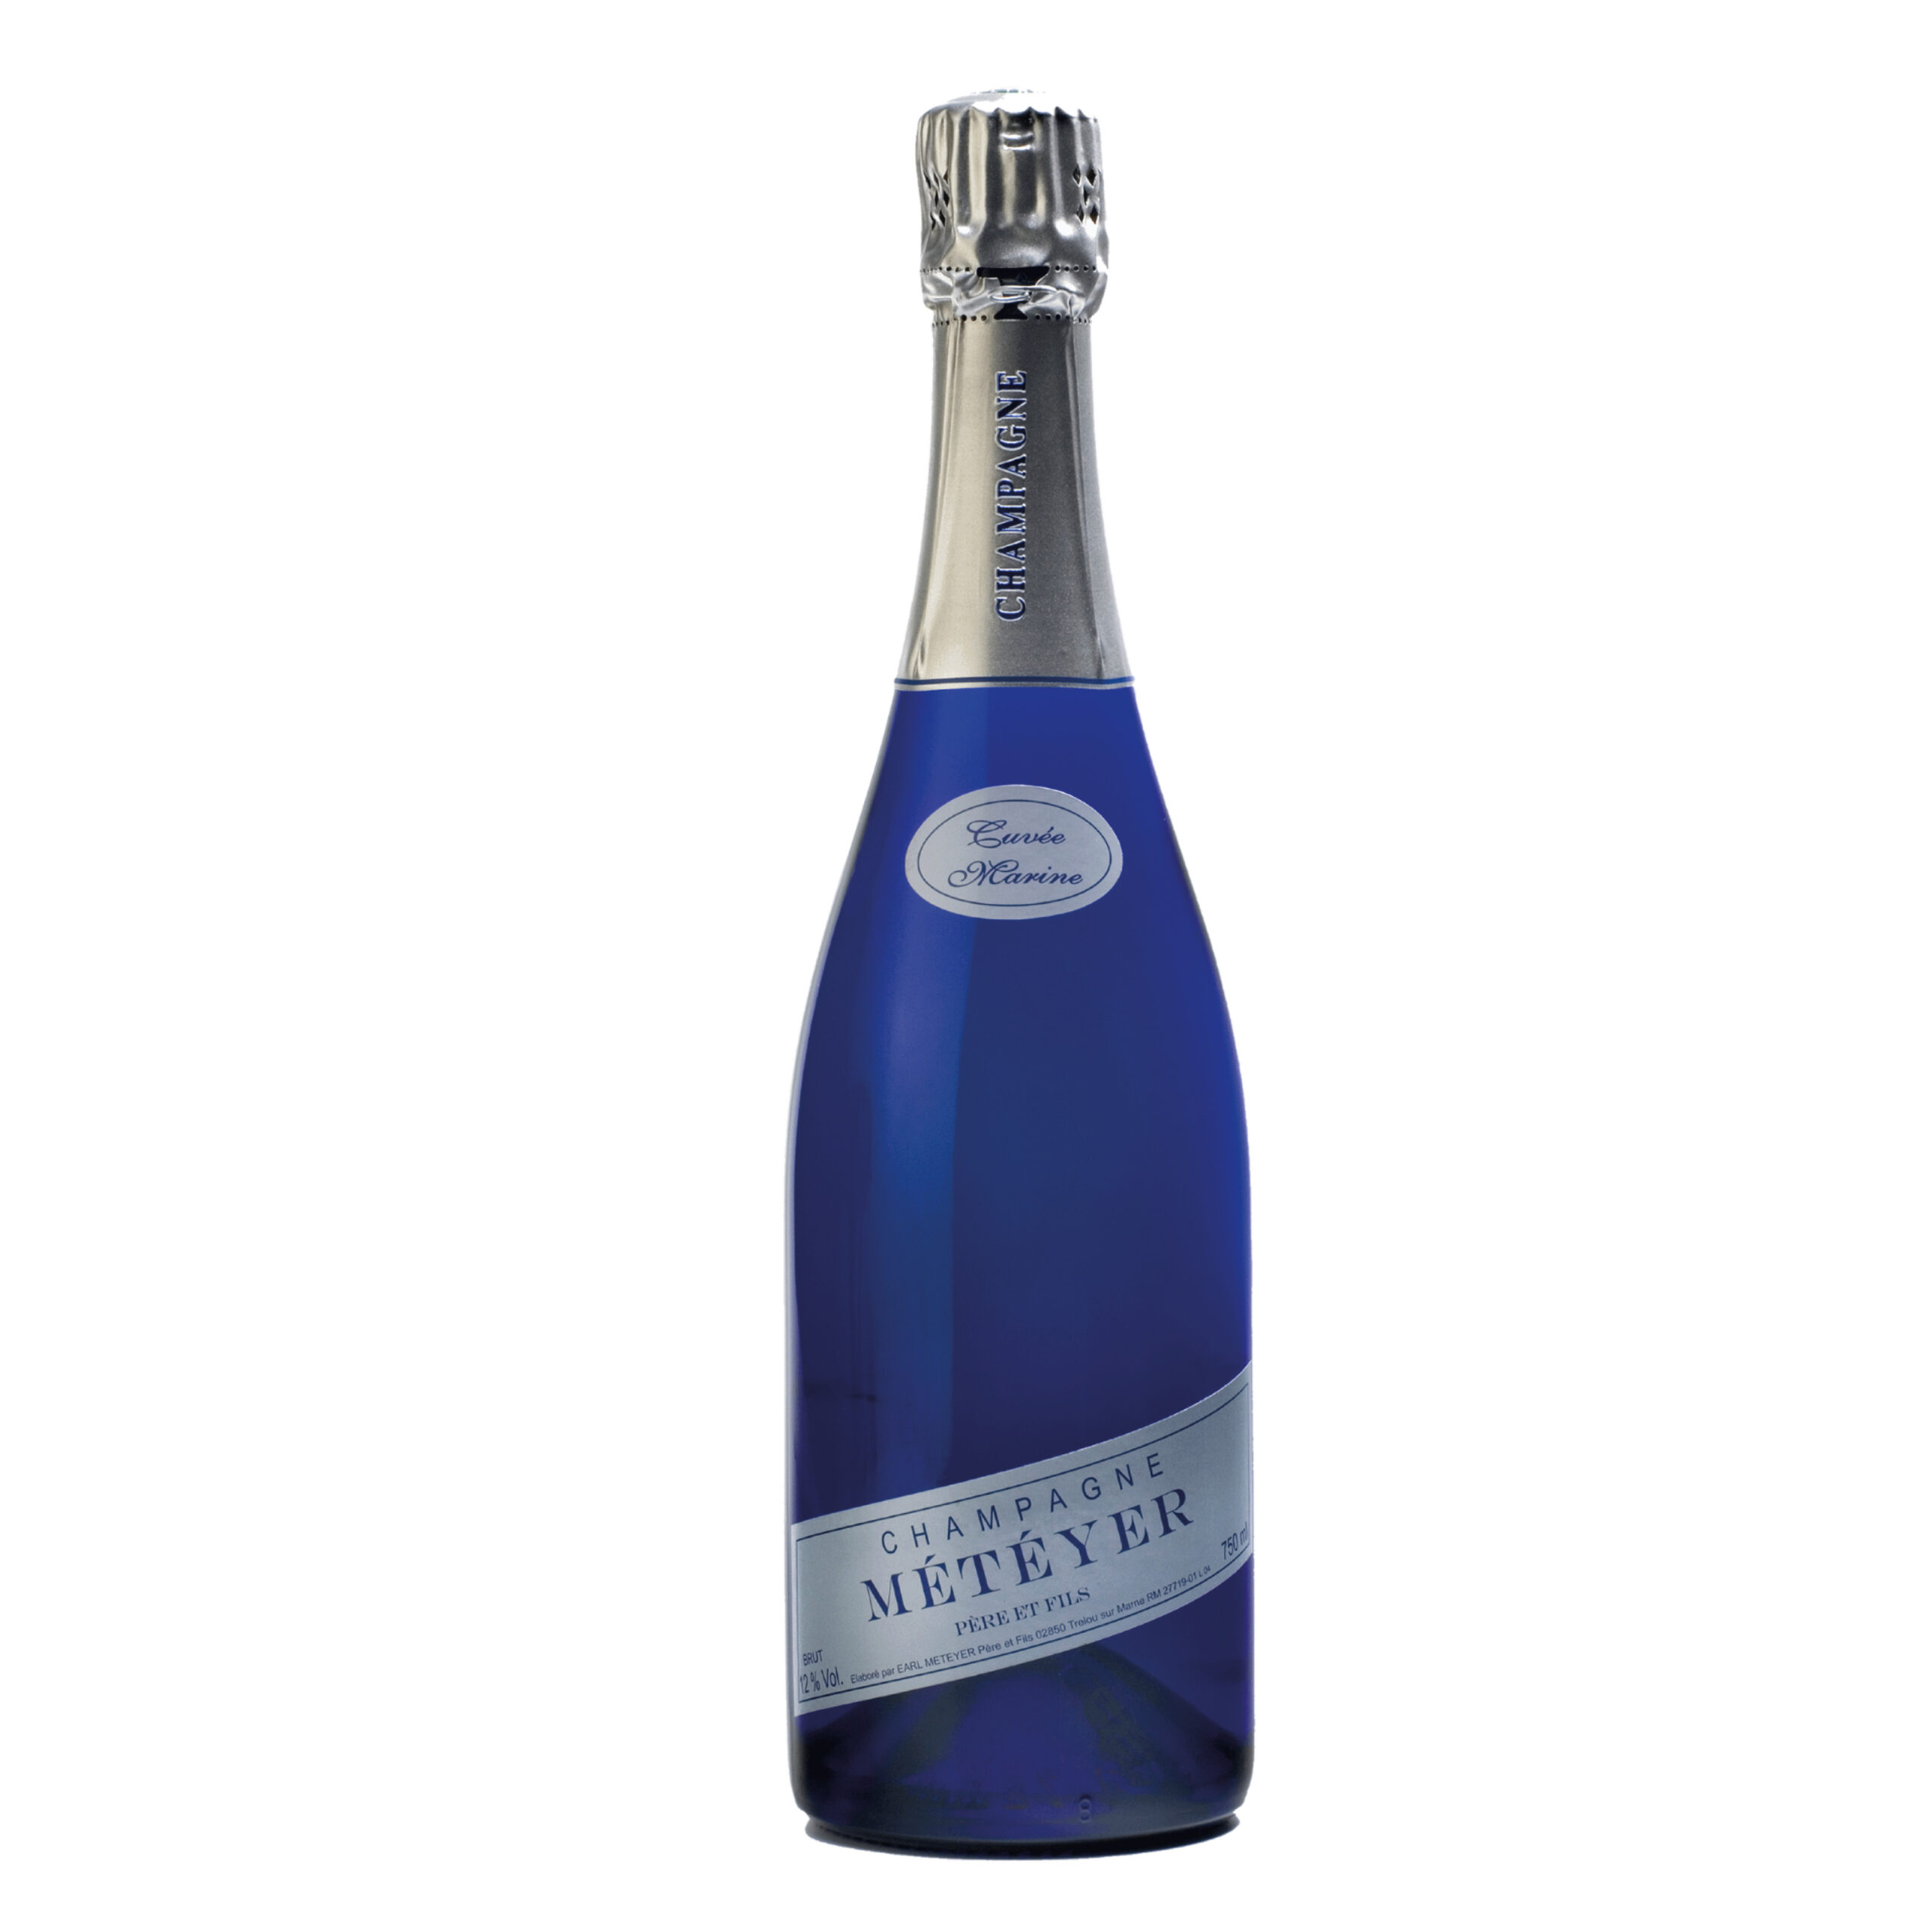 Marine cuvéen vintage champagne 2018. Produceret i små mængder.